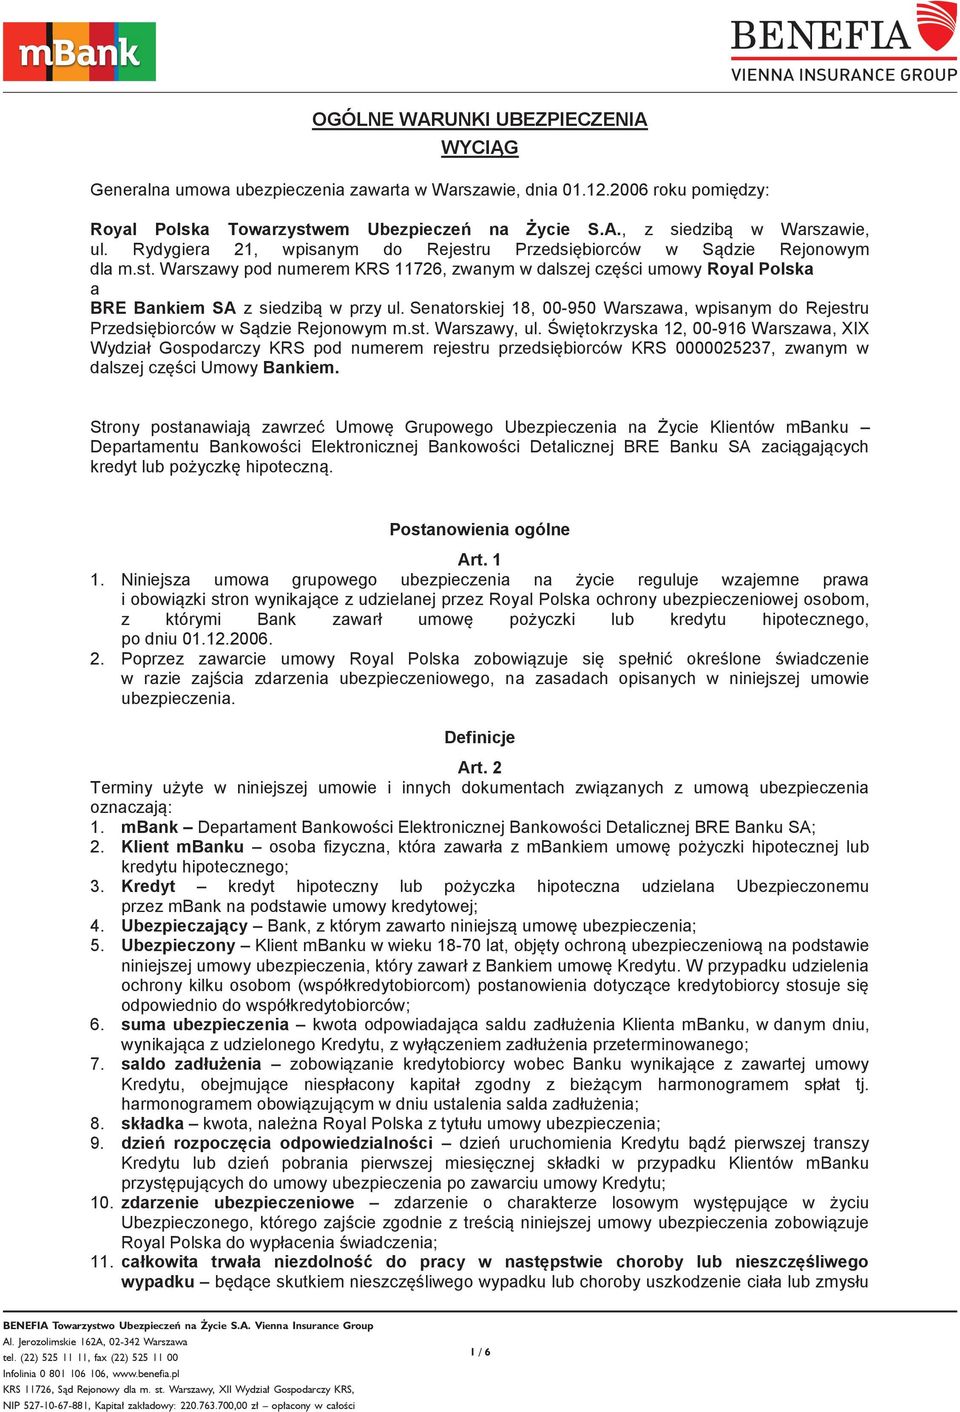 Senatorskiej 18, 00-950 Warszawa, wpisanym do Rejestru Przedsiębiorców w Sądzie Rejonowym m.st. Warszawy, ul.